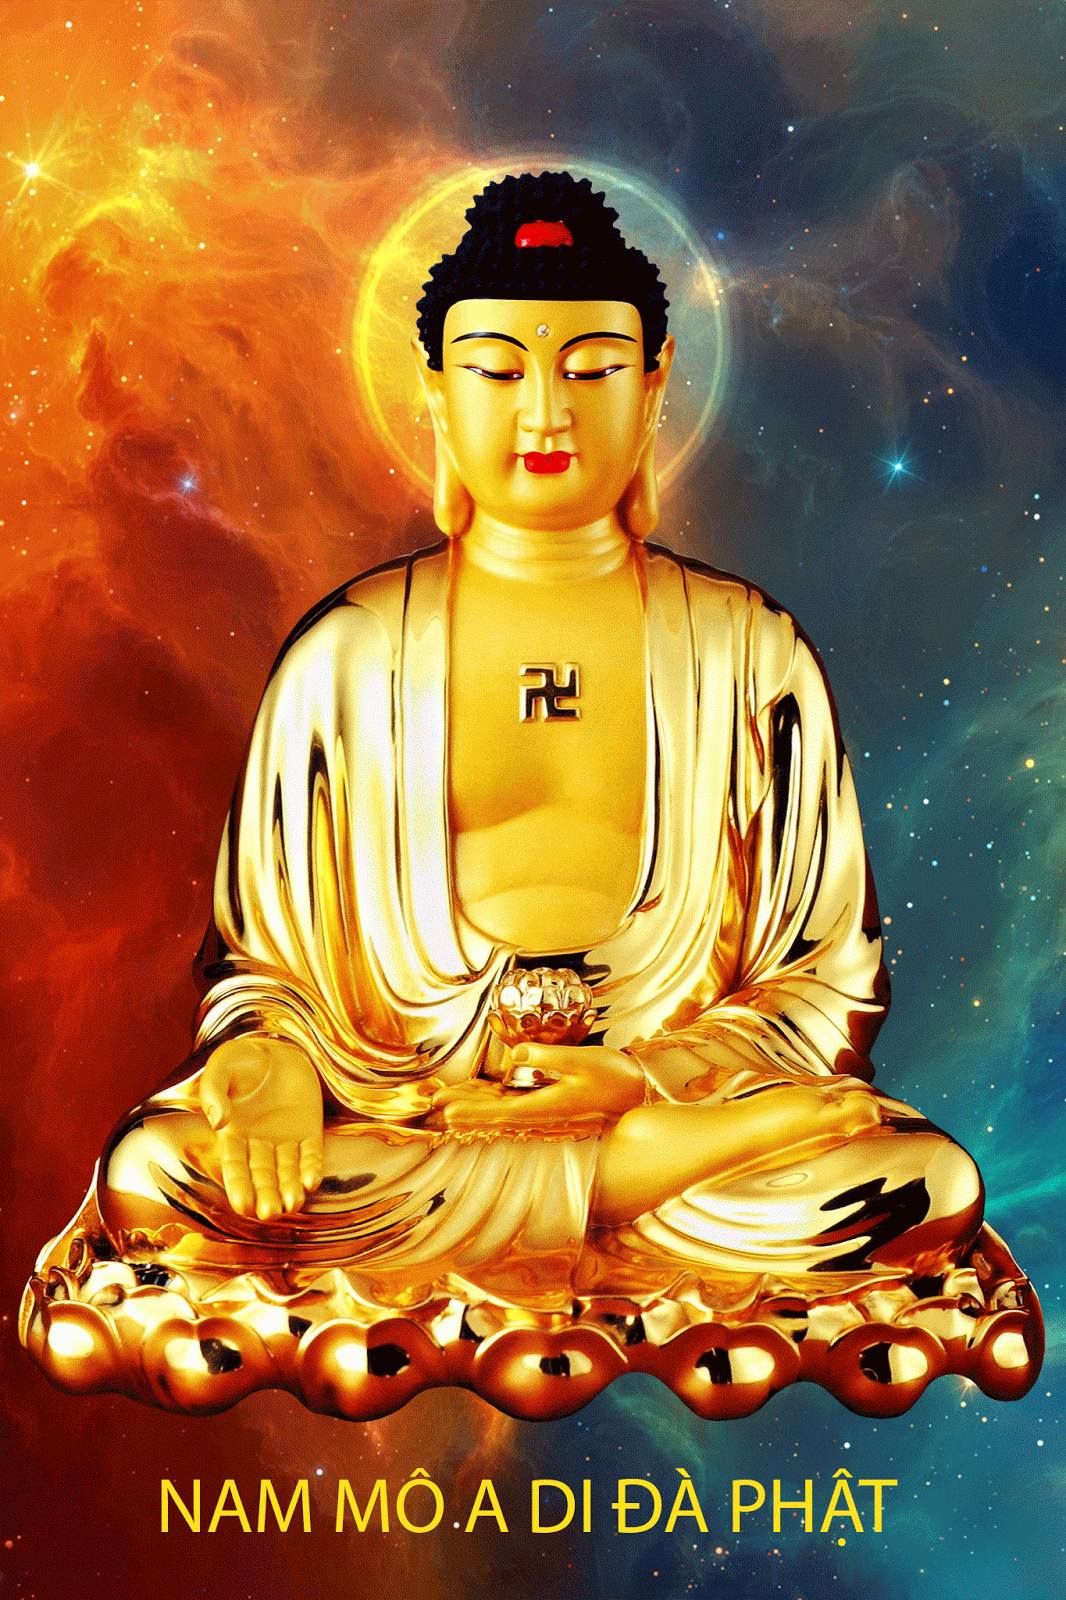 Hình Phật A Di Đà động - Ảnh Phật đẹp chất lượng cao